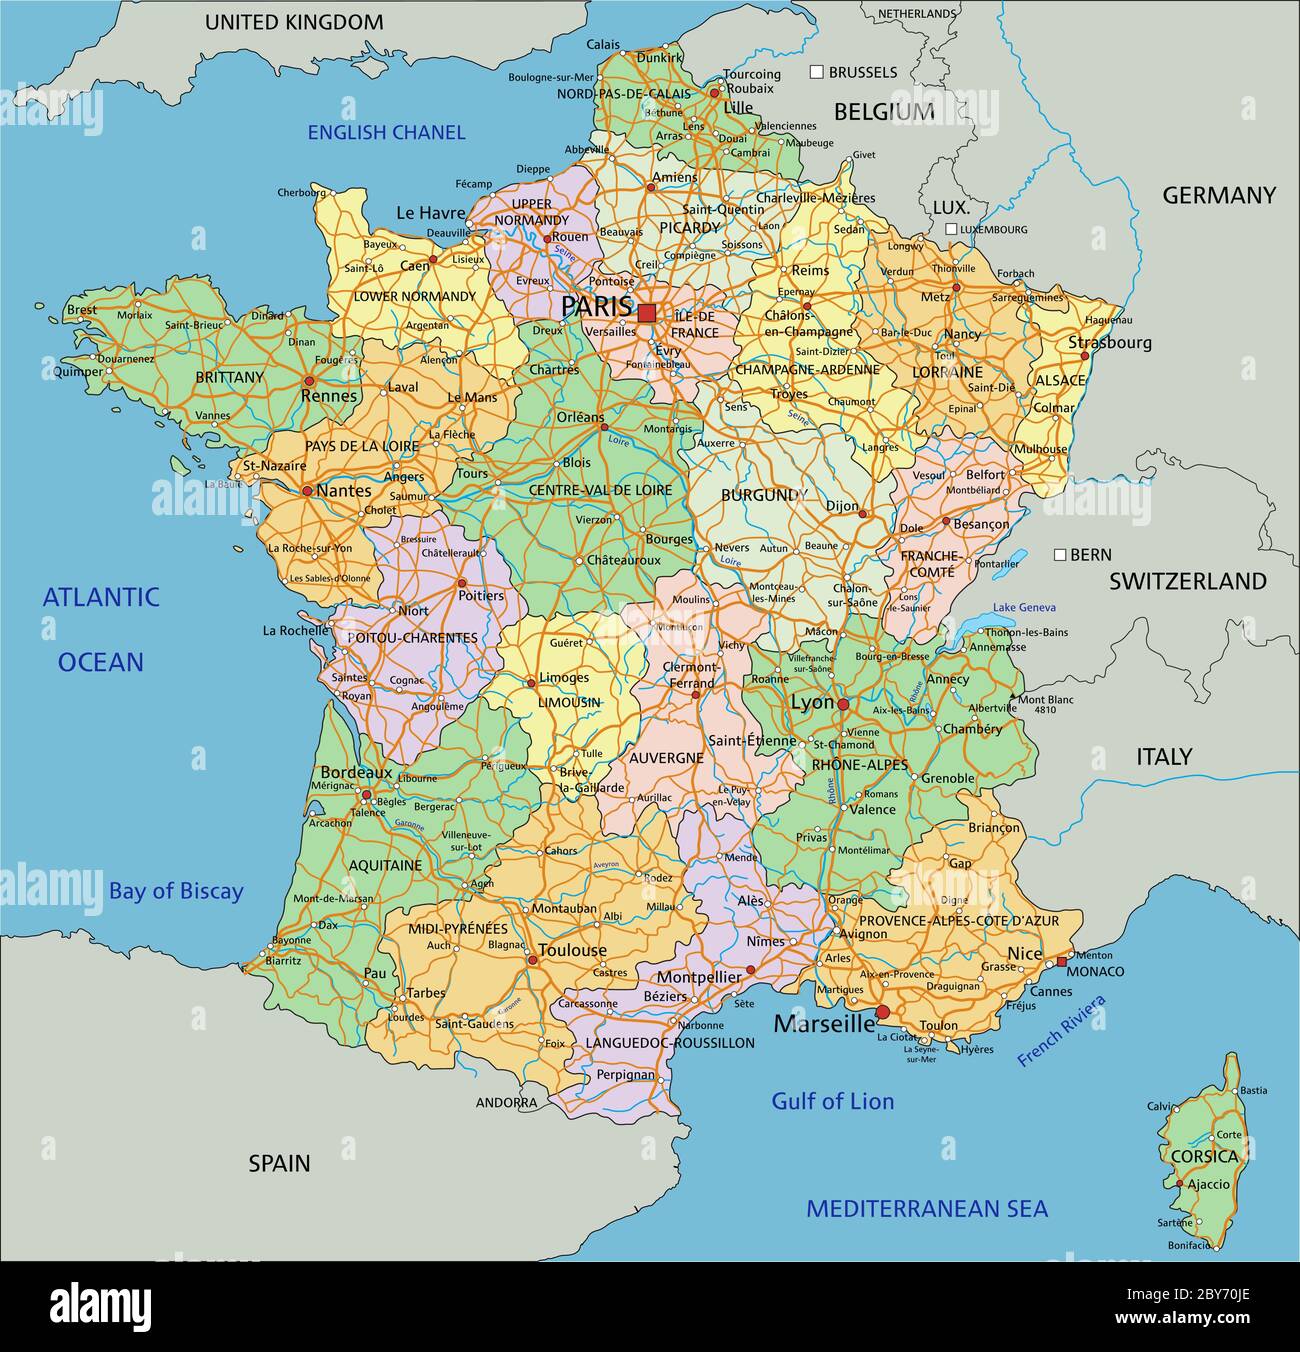 Mappa della francia immagini e fotografie stock ad alta risoluzione - Alamy